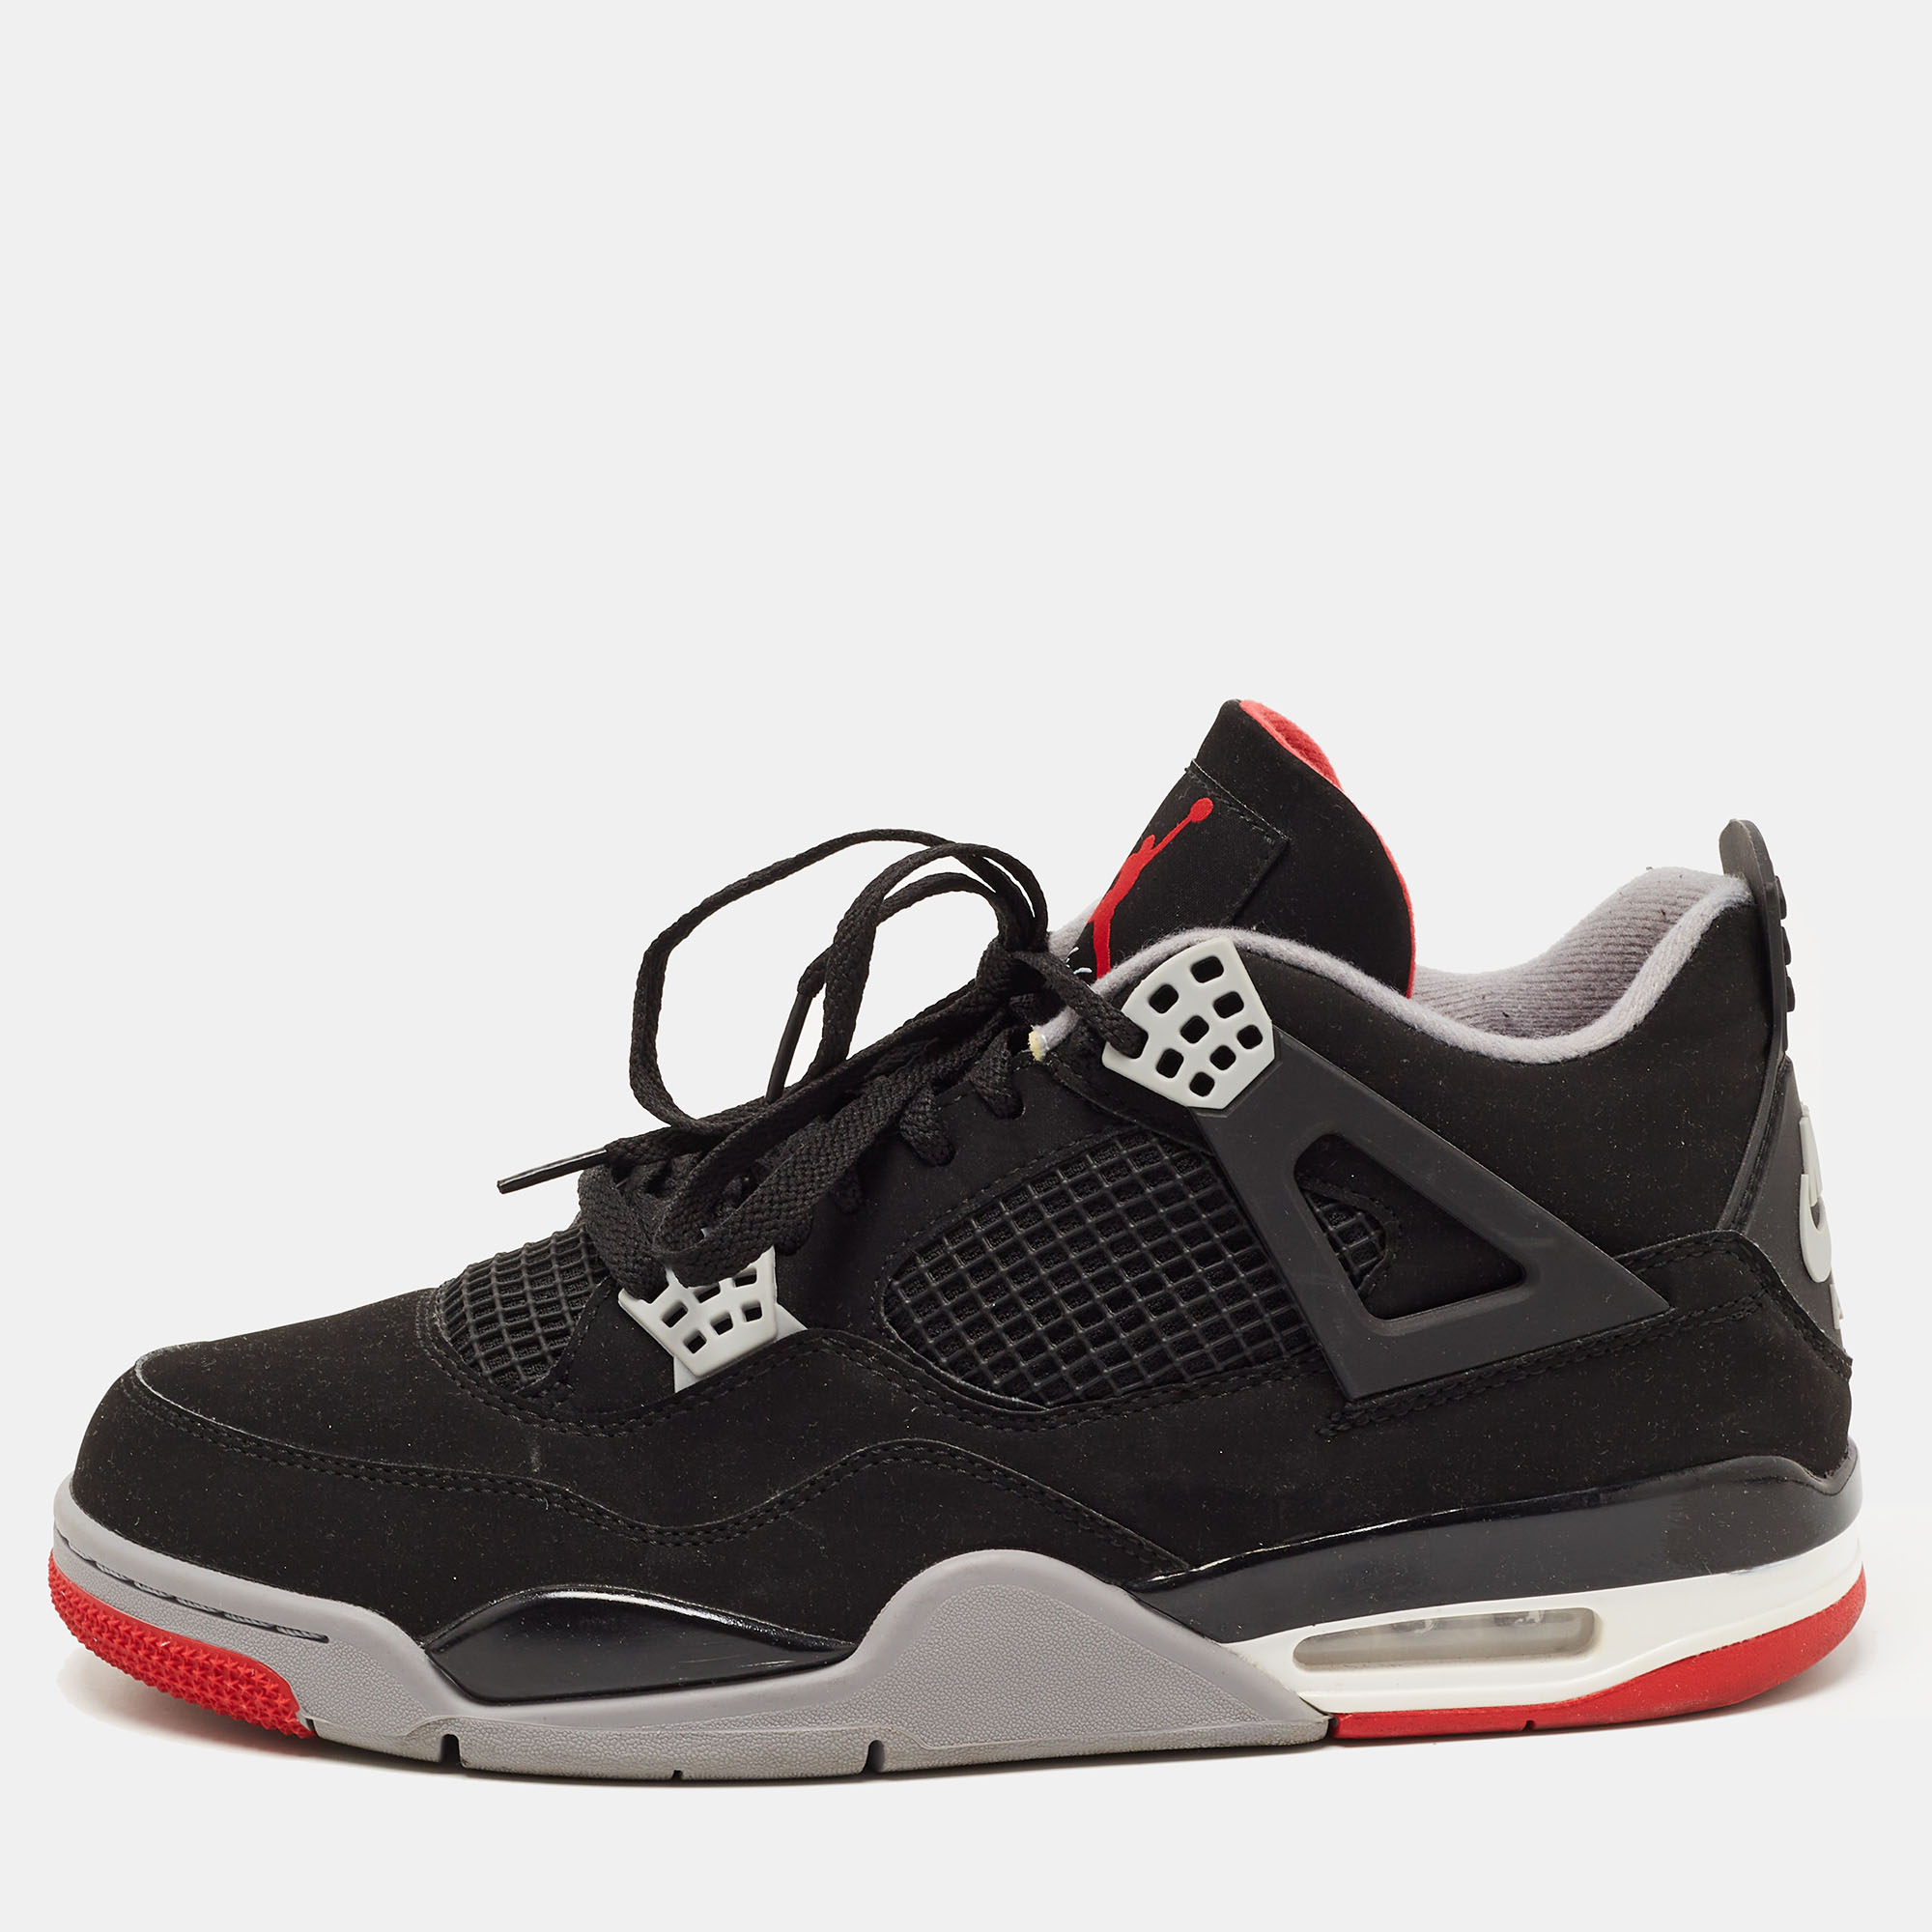 Pre-owned Air Jordans Air Jordan Black Nubuck Leather Jordan 4 Retro Sneakers Size 47.5